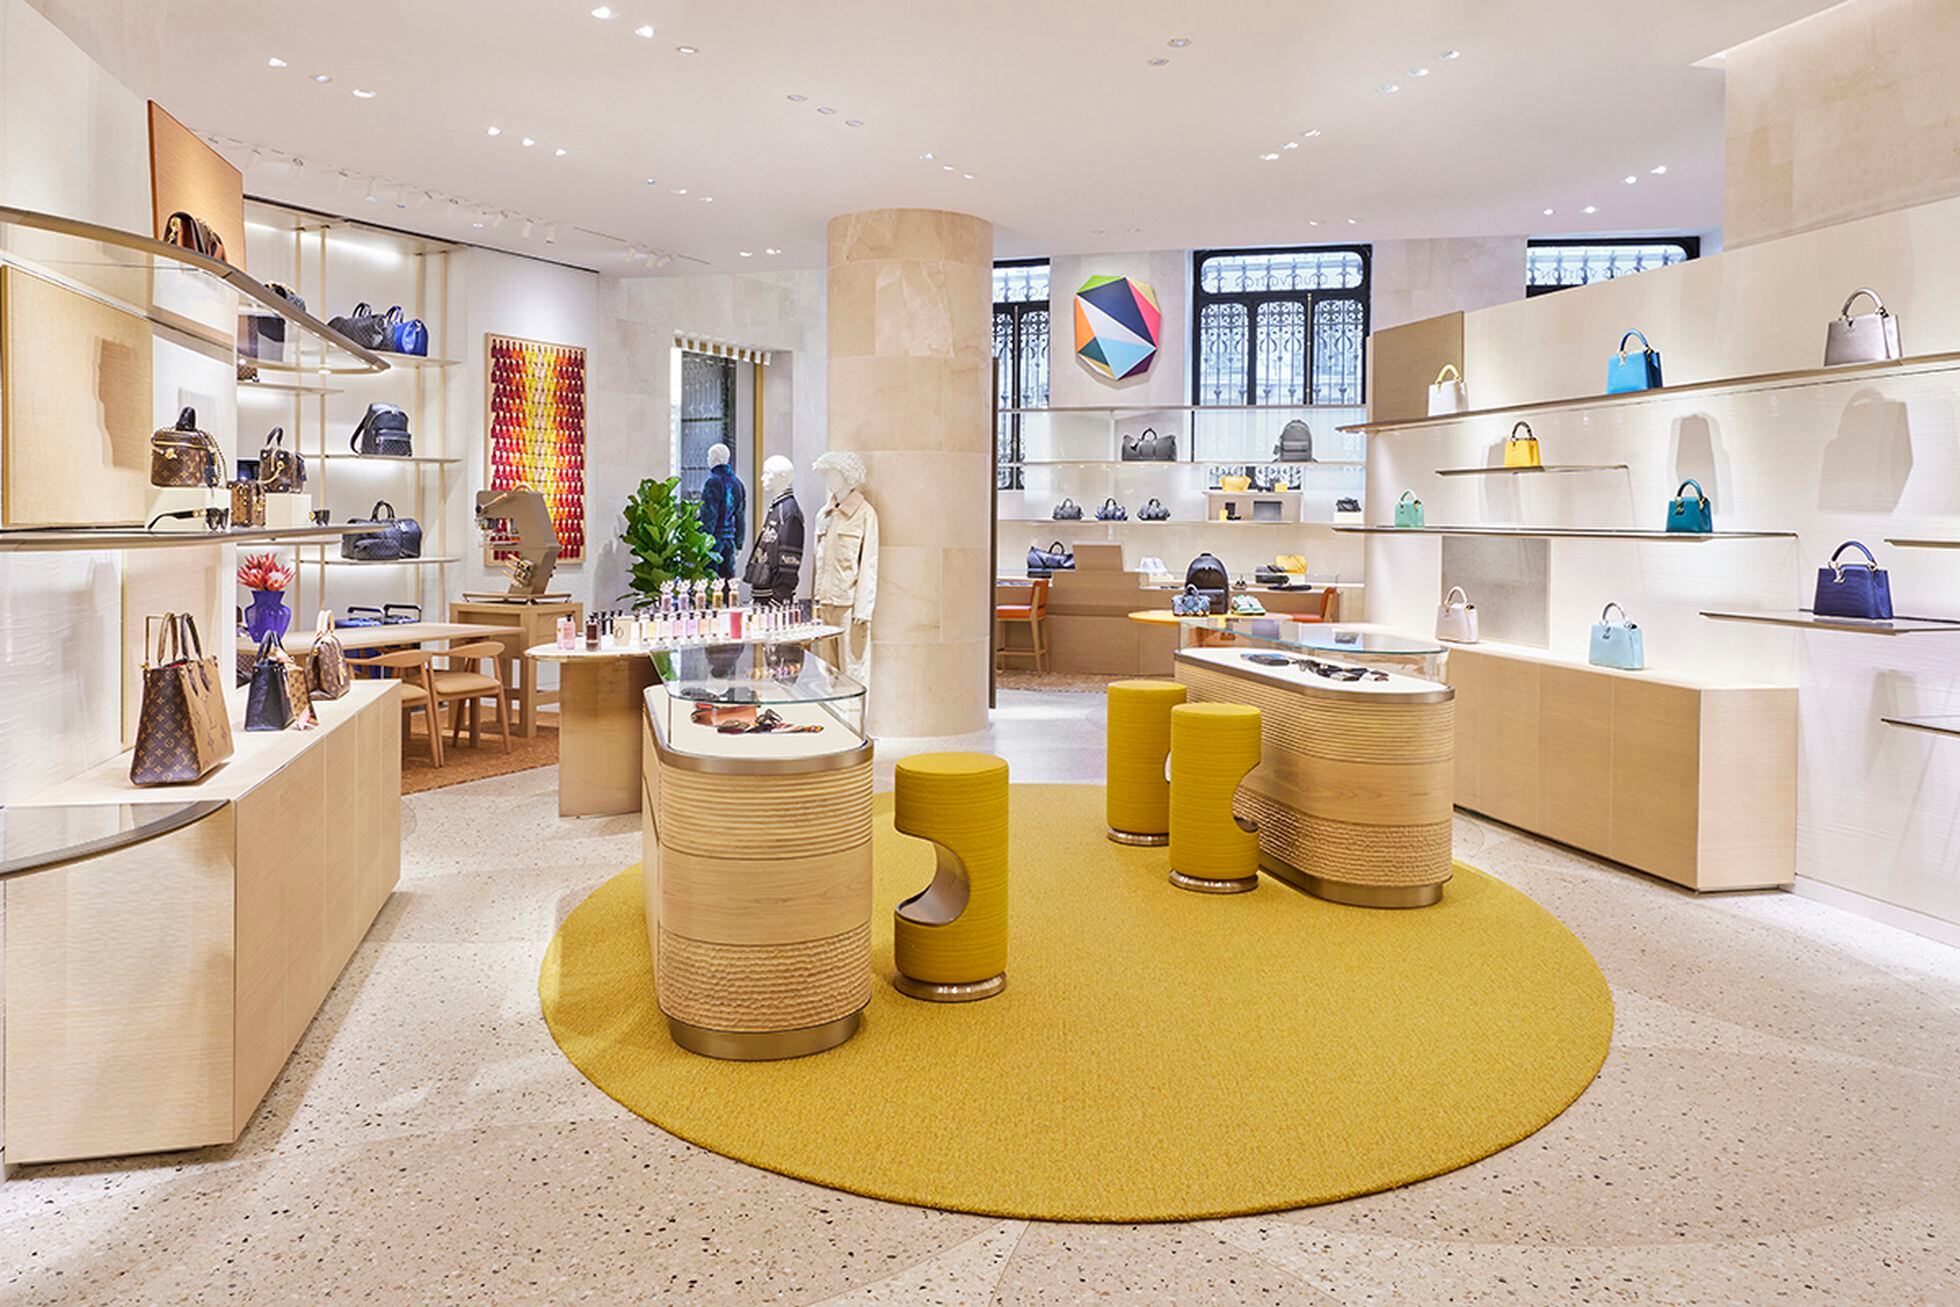 Louis Vuitton inaugura una imponente tienda en la Galería